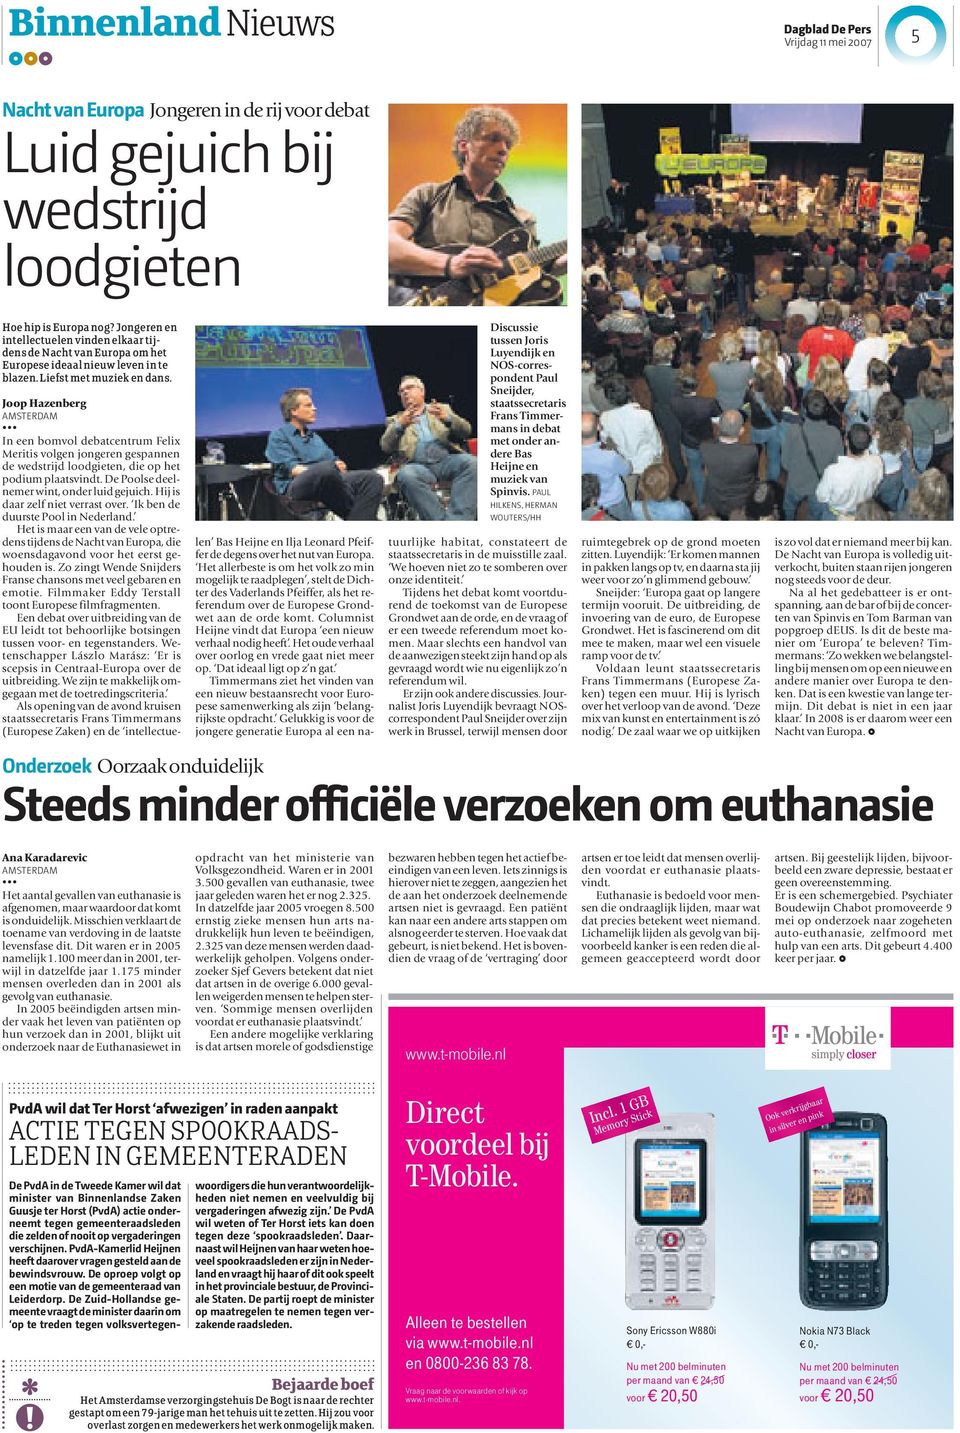 PvdA wil dat Ter Horst afwezigen in raden aanpakt ACTIE TEGEN SPOOKRAADS- LEDEN IN GEMEENTERADEN De PvdA in de Tweede Kamer wil dat minister van Binnenlandse Zaken Guusje ter Horst (PvdA) actie